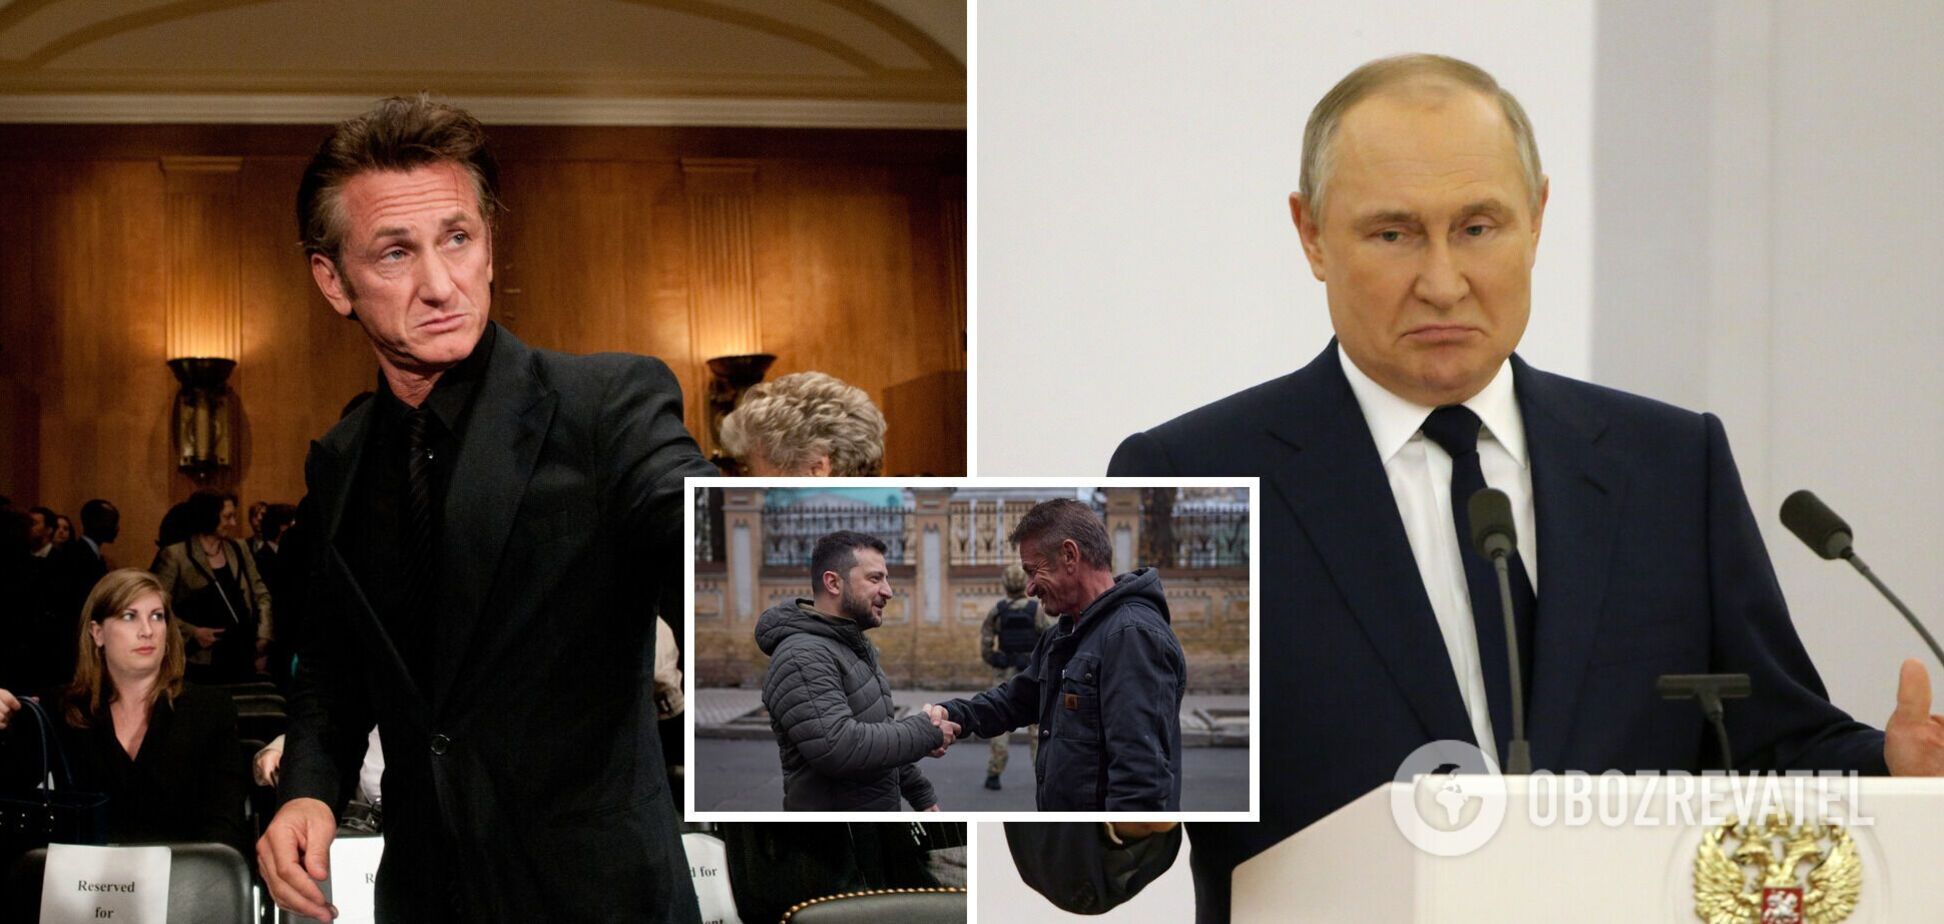 Шон Пенн вспомнил свое знакомство с Путиным на даче у Никиты Михалкова: это было так агрессивно